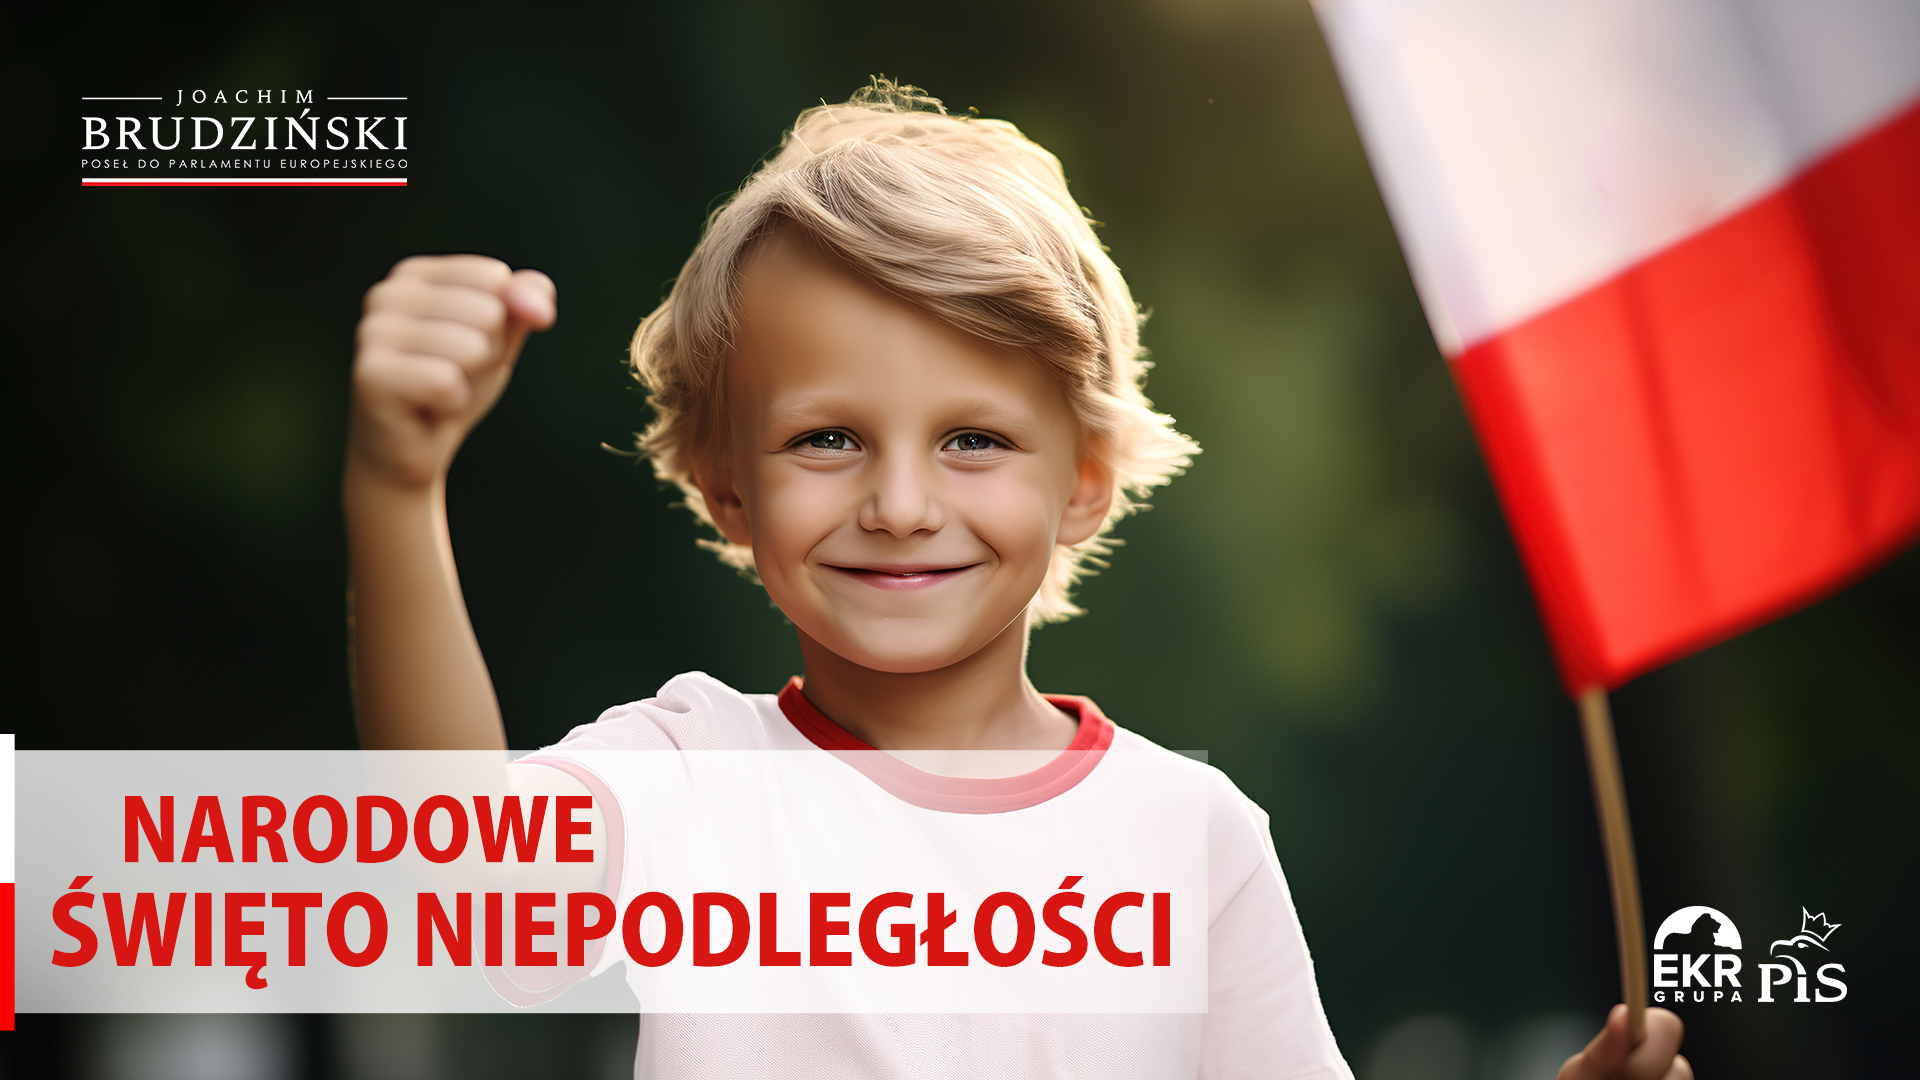 Polskę mamy w naszych sercach! Zawsze! ♥️.